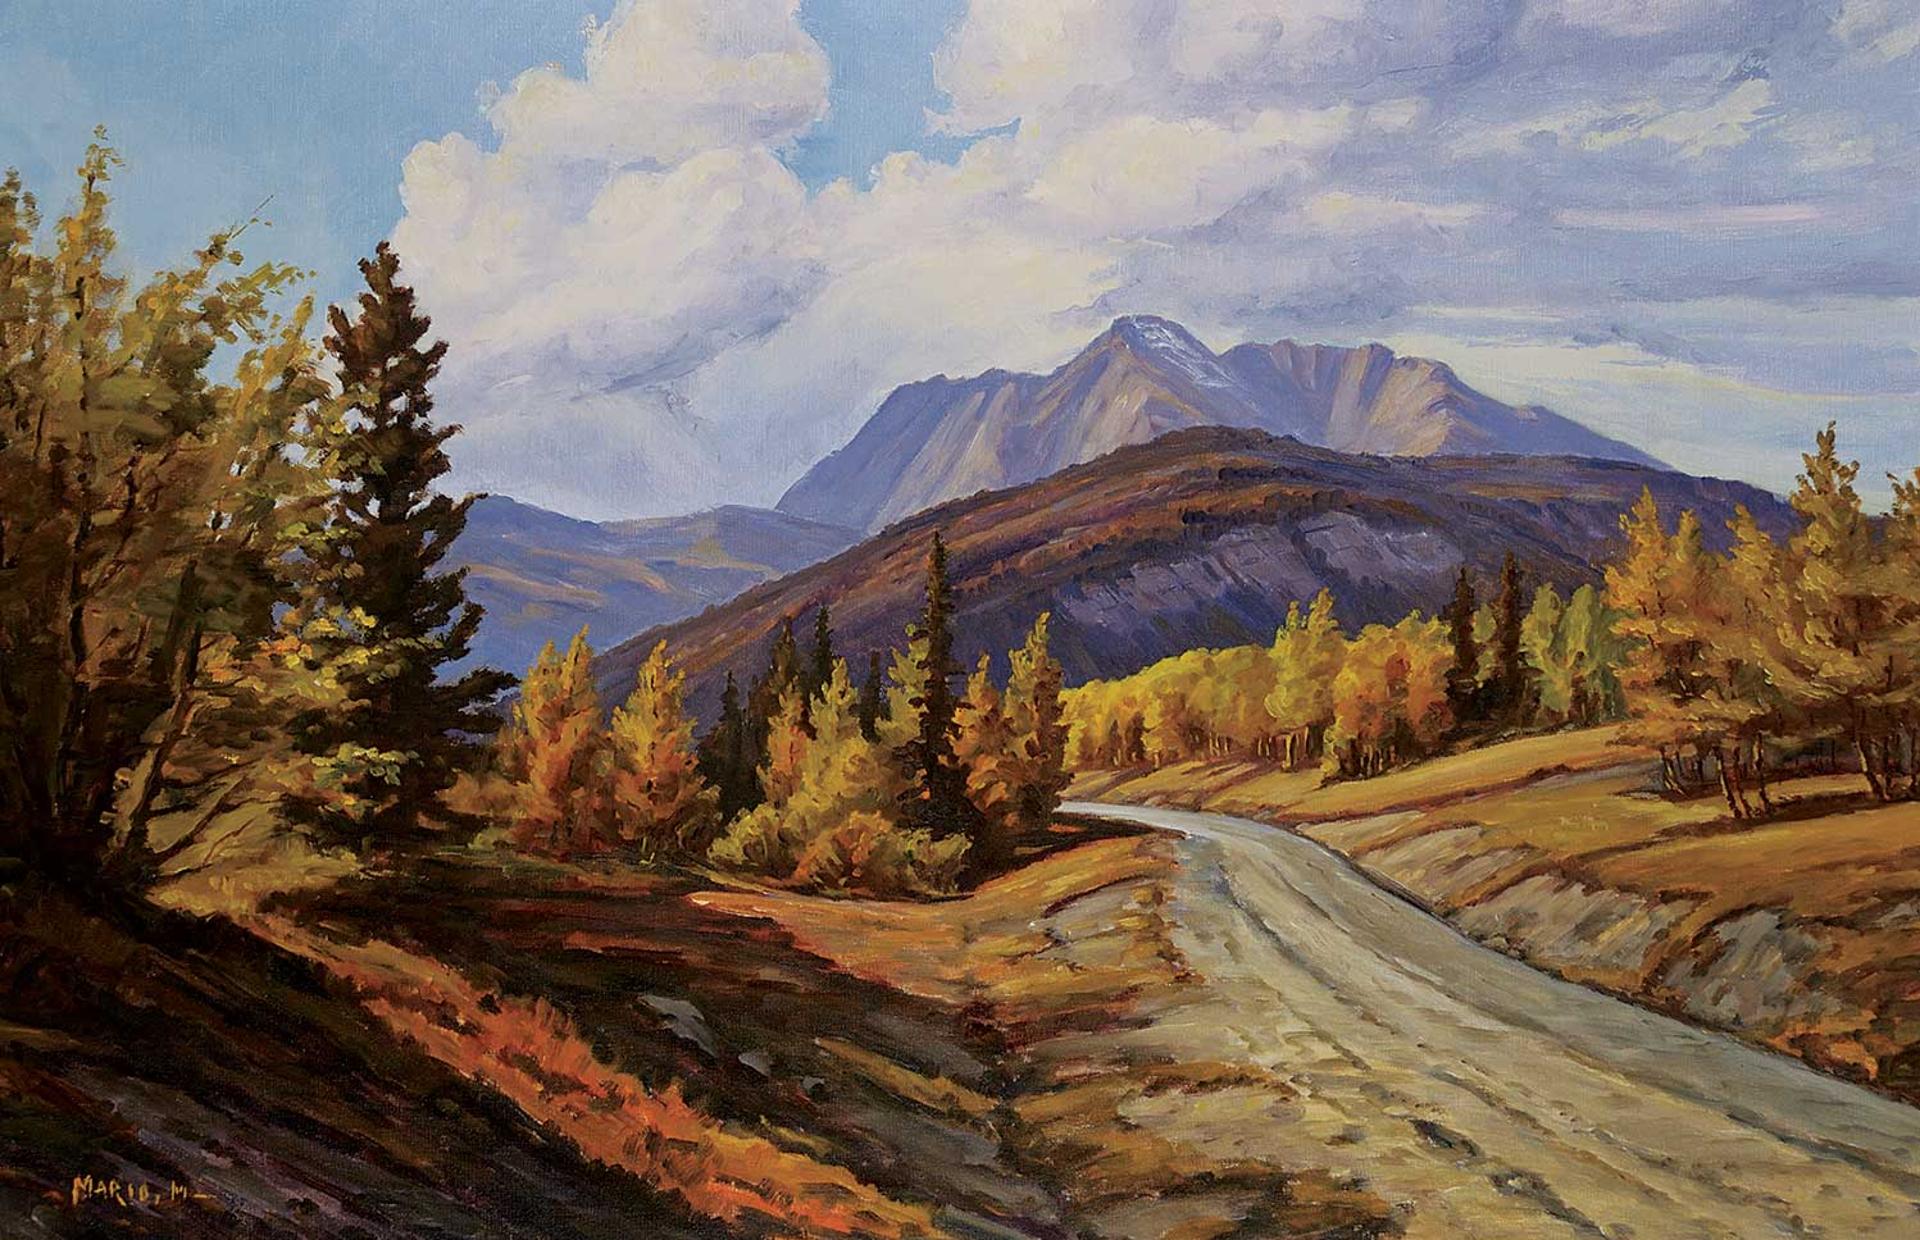 Mario Moczorodynski (1923) - Untitled - Road to the Mountains